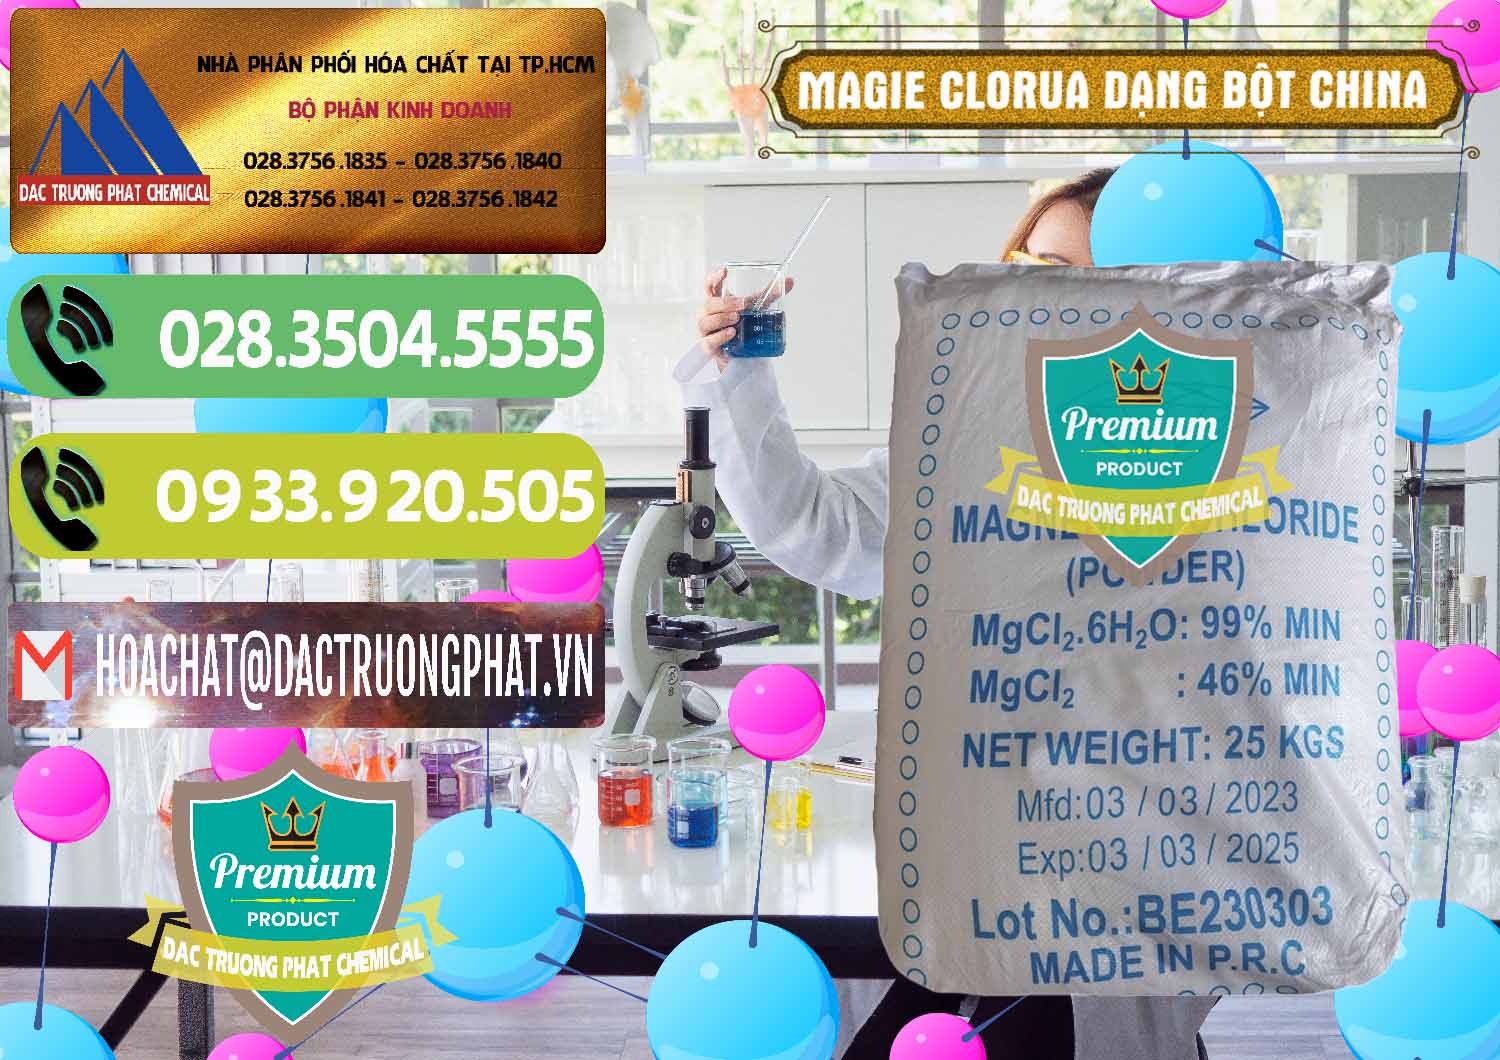 Nơi bán và phân phối Magie Clorua – MGCL2 96% Dạng Bột Logo Kim Cương Trung Quốc China - 0387 - Đơn vị bán ( cung cấp ) hóa chất tại TP.HCM - hoachatmientay.vn